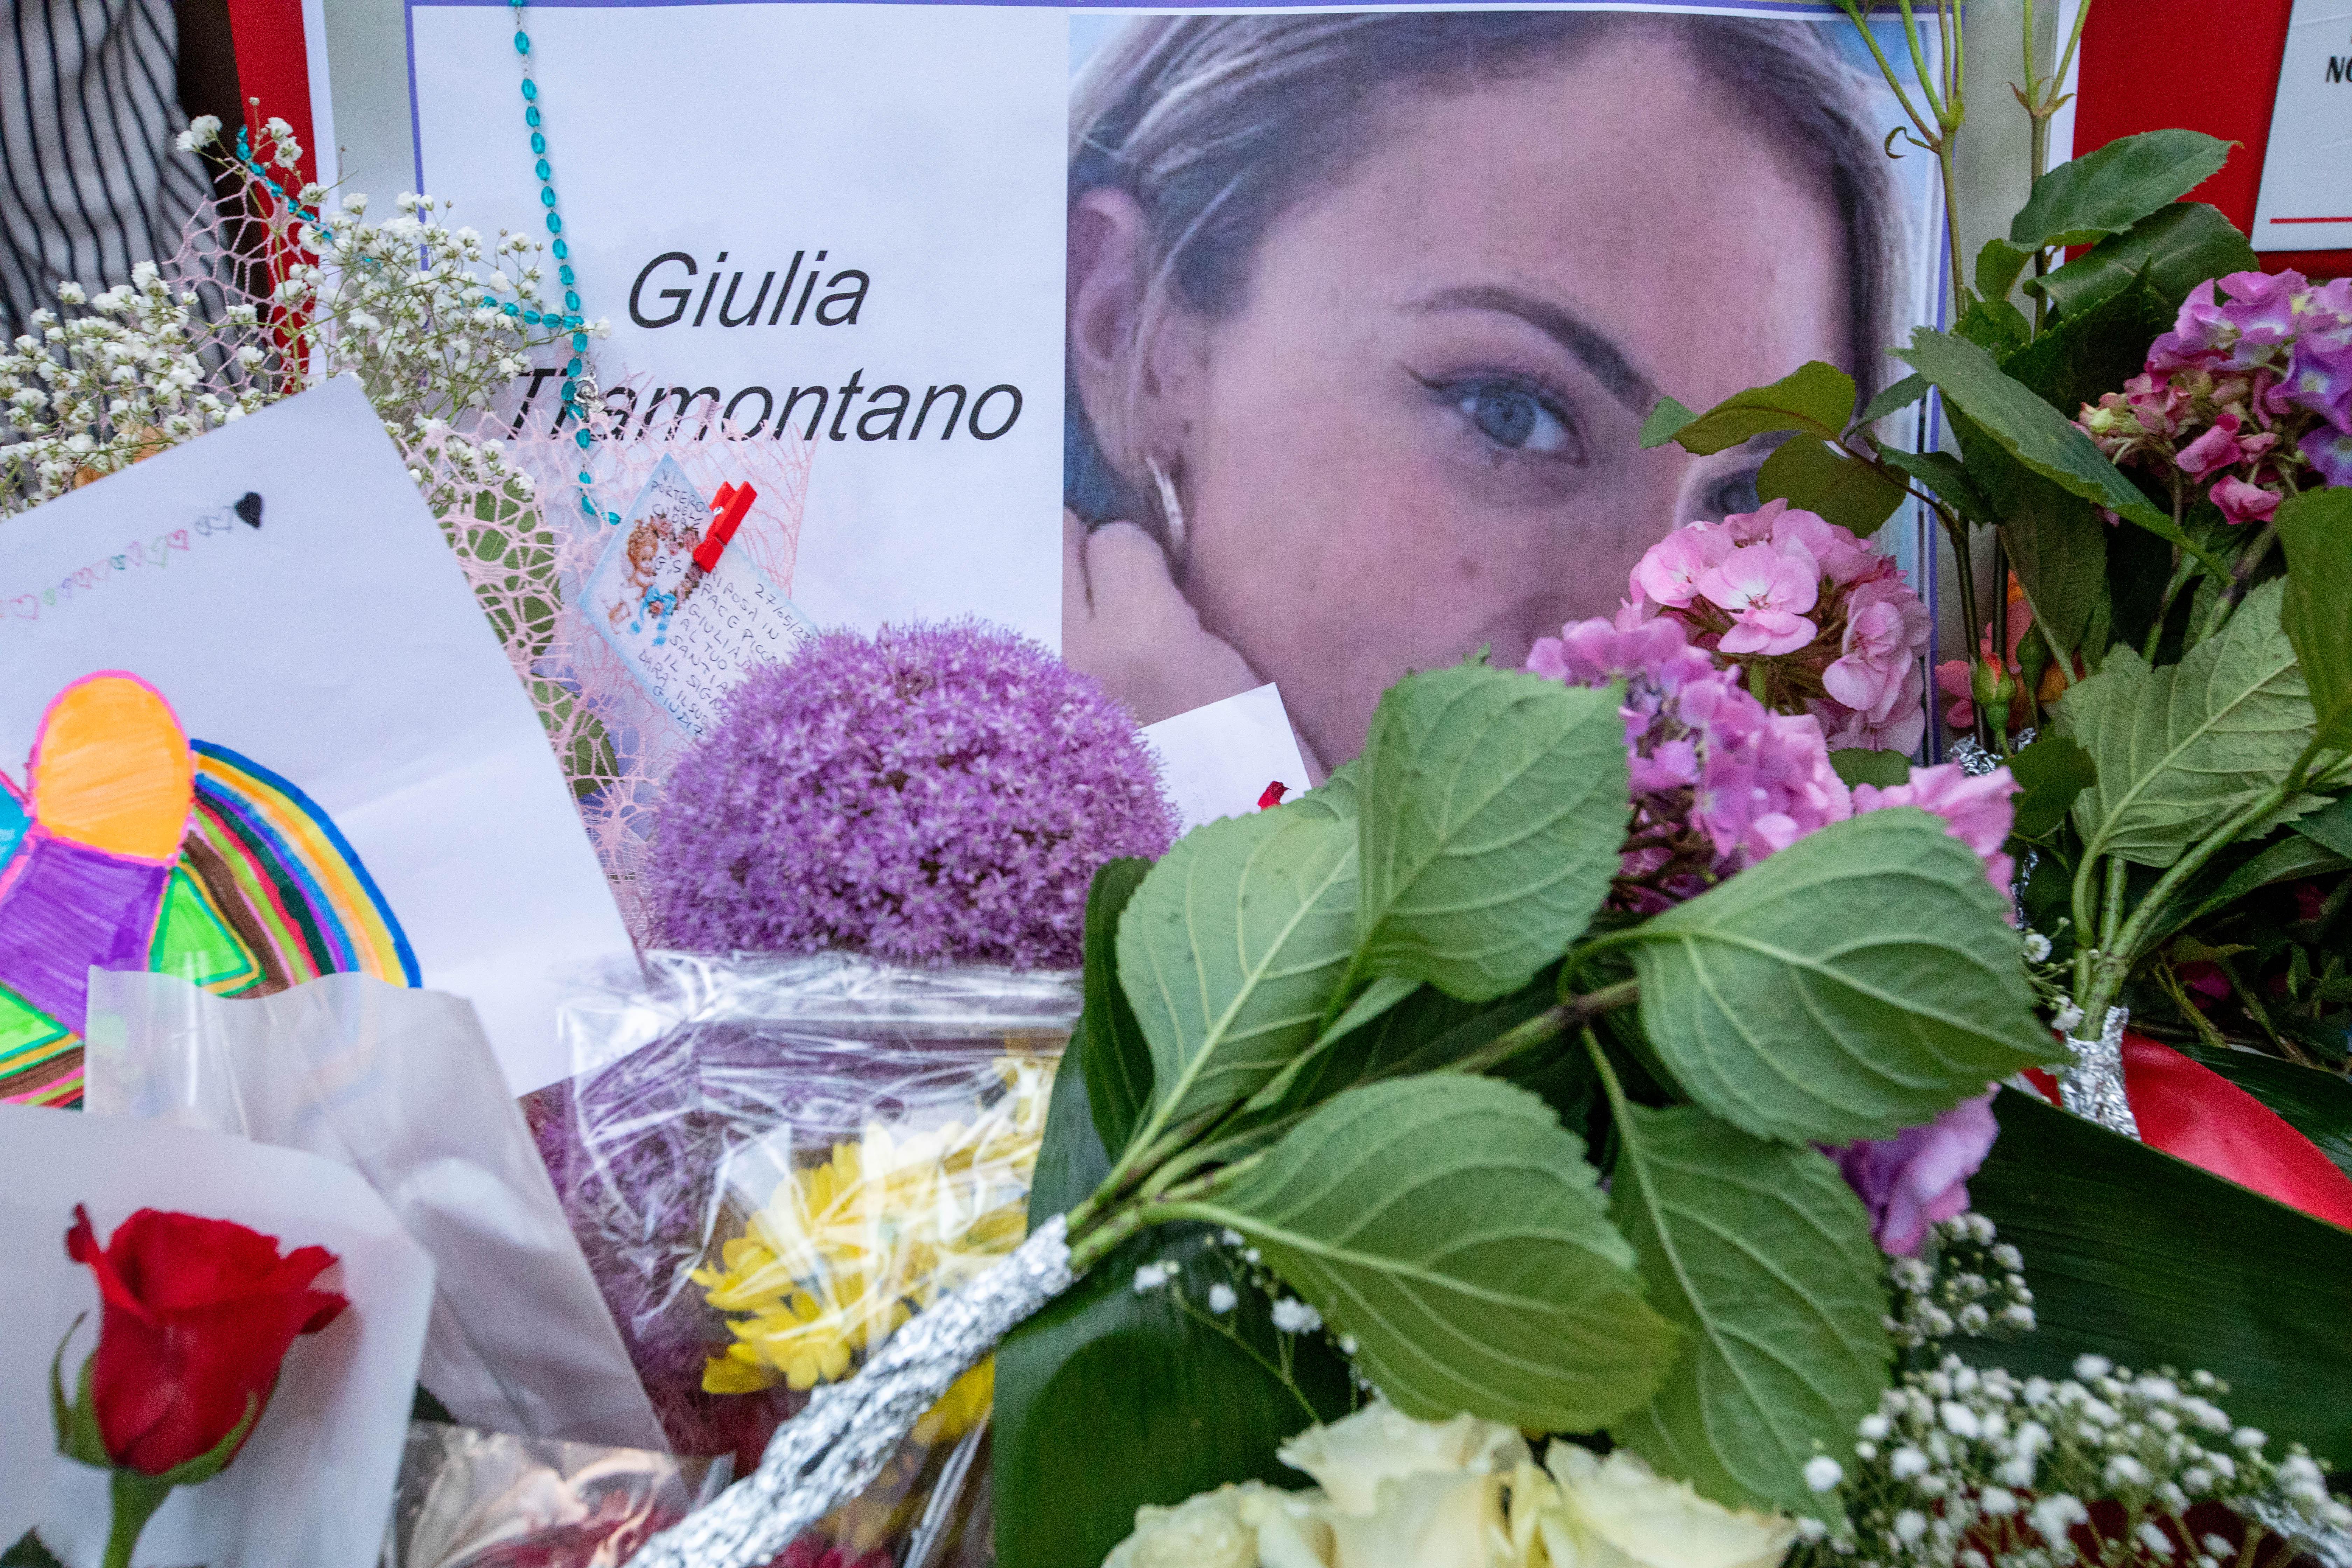 Omicidio Tramontano, oggi nuova udienza: sorella di Giulia tra testimoni